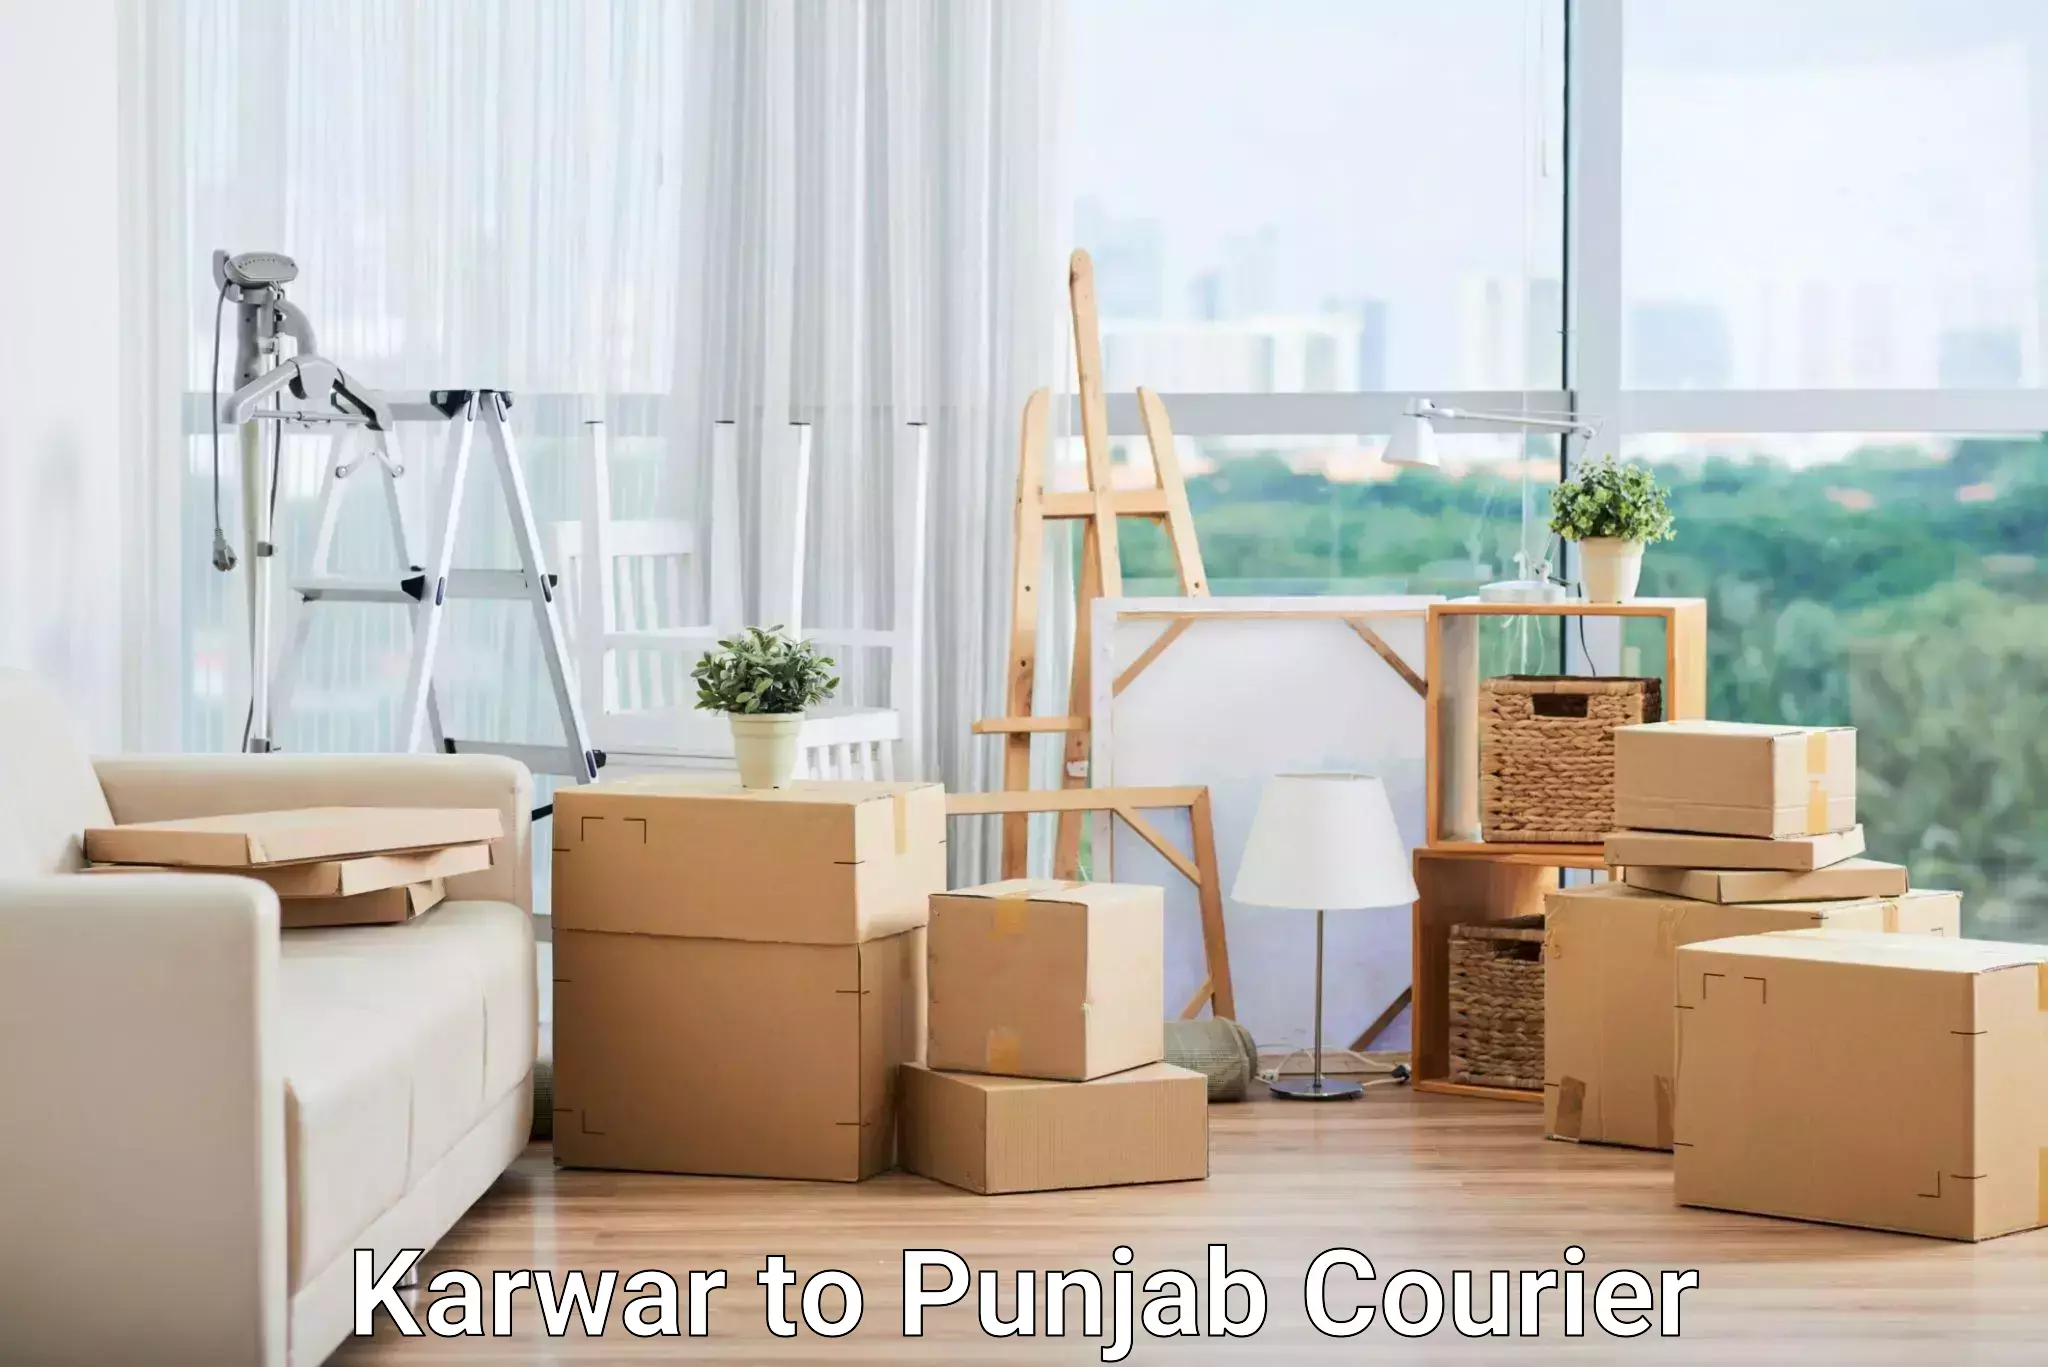 Express mail solutions Karwar to Punjab